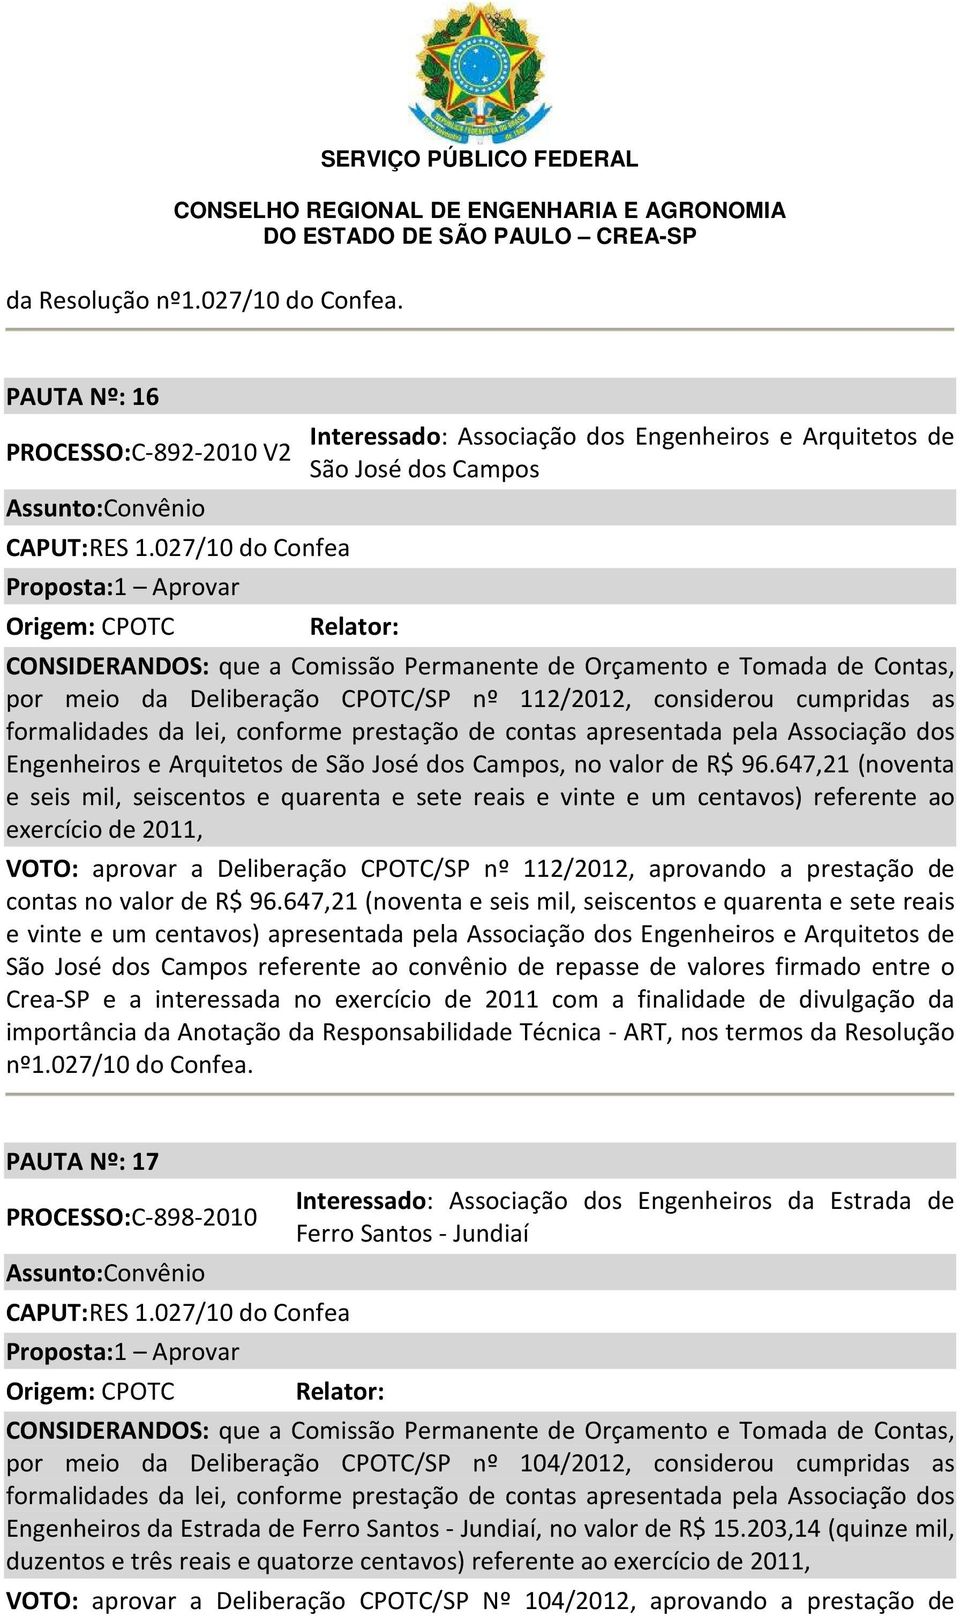 Deliberação CPOTC/SP nº 112/2012, considerou cumpridas as formalidades da lei, conforme prestação de contas apresentada pela Associação dos Engenheiros e Arquitetos de São José dos Campos, no valor